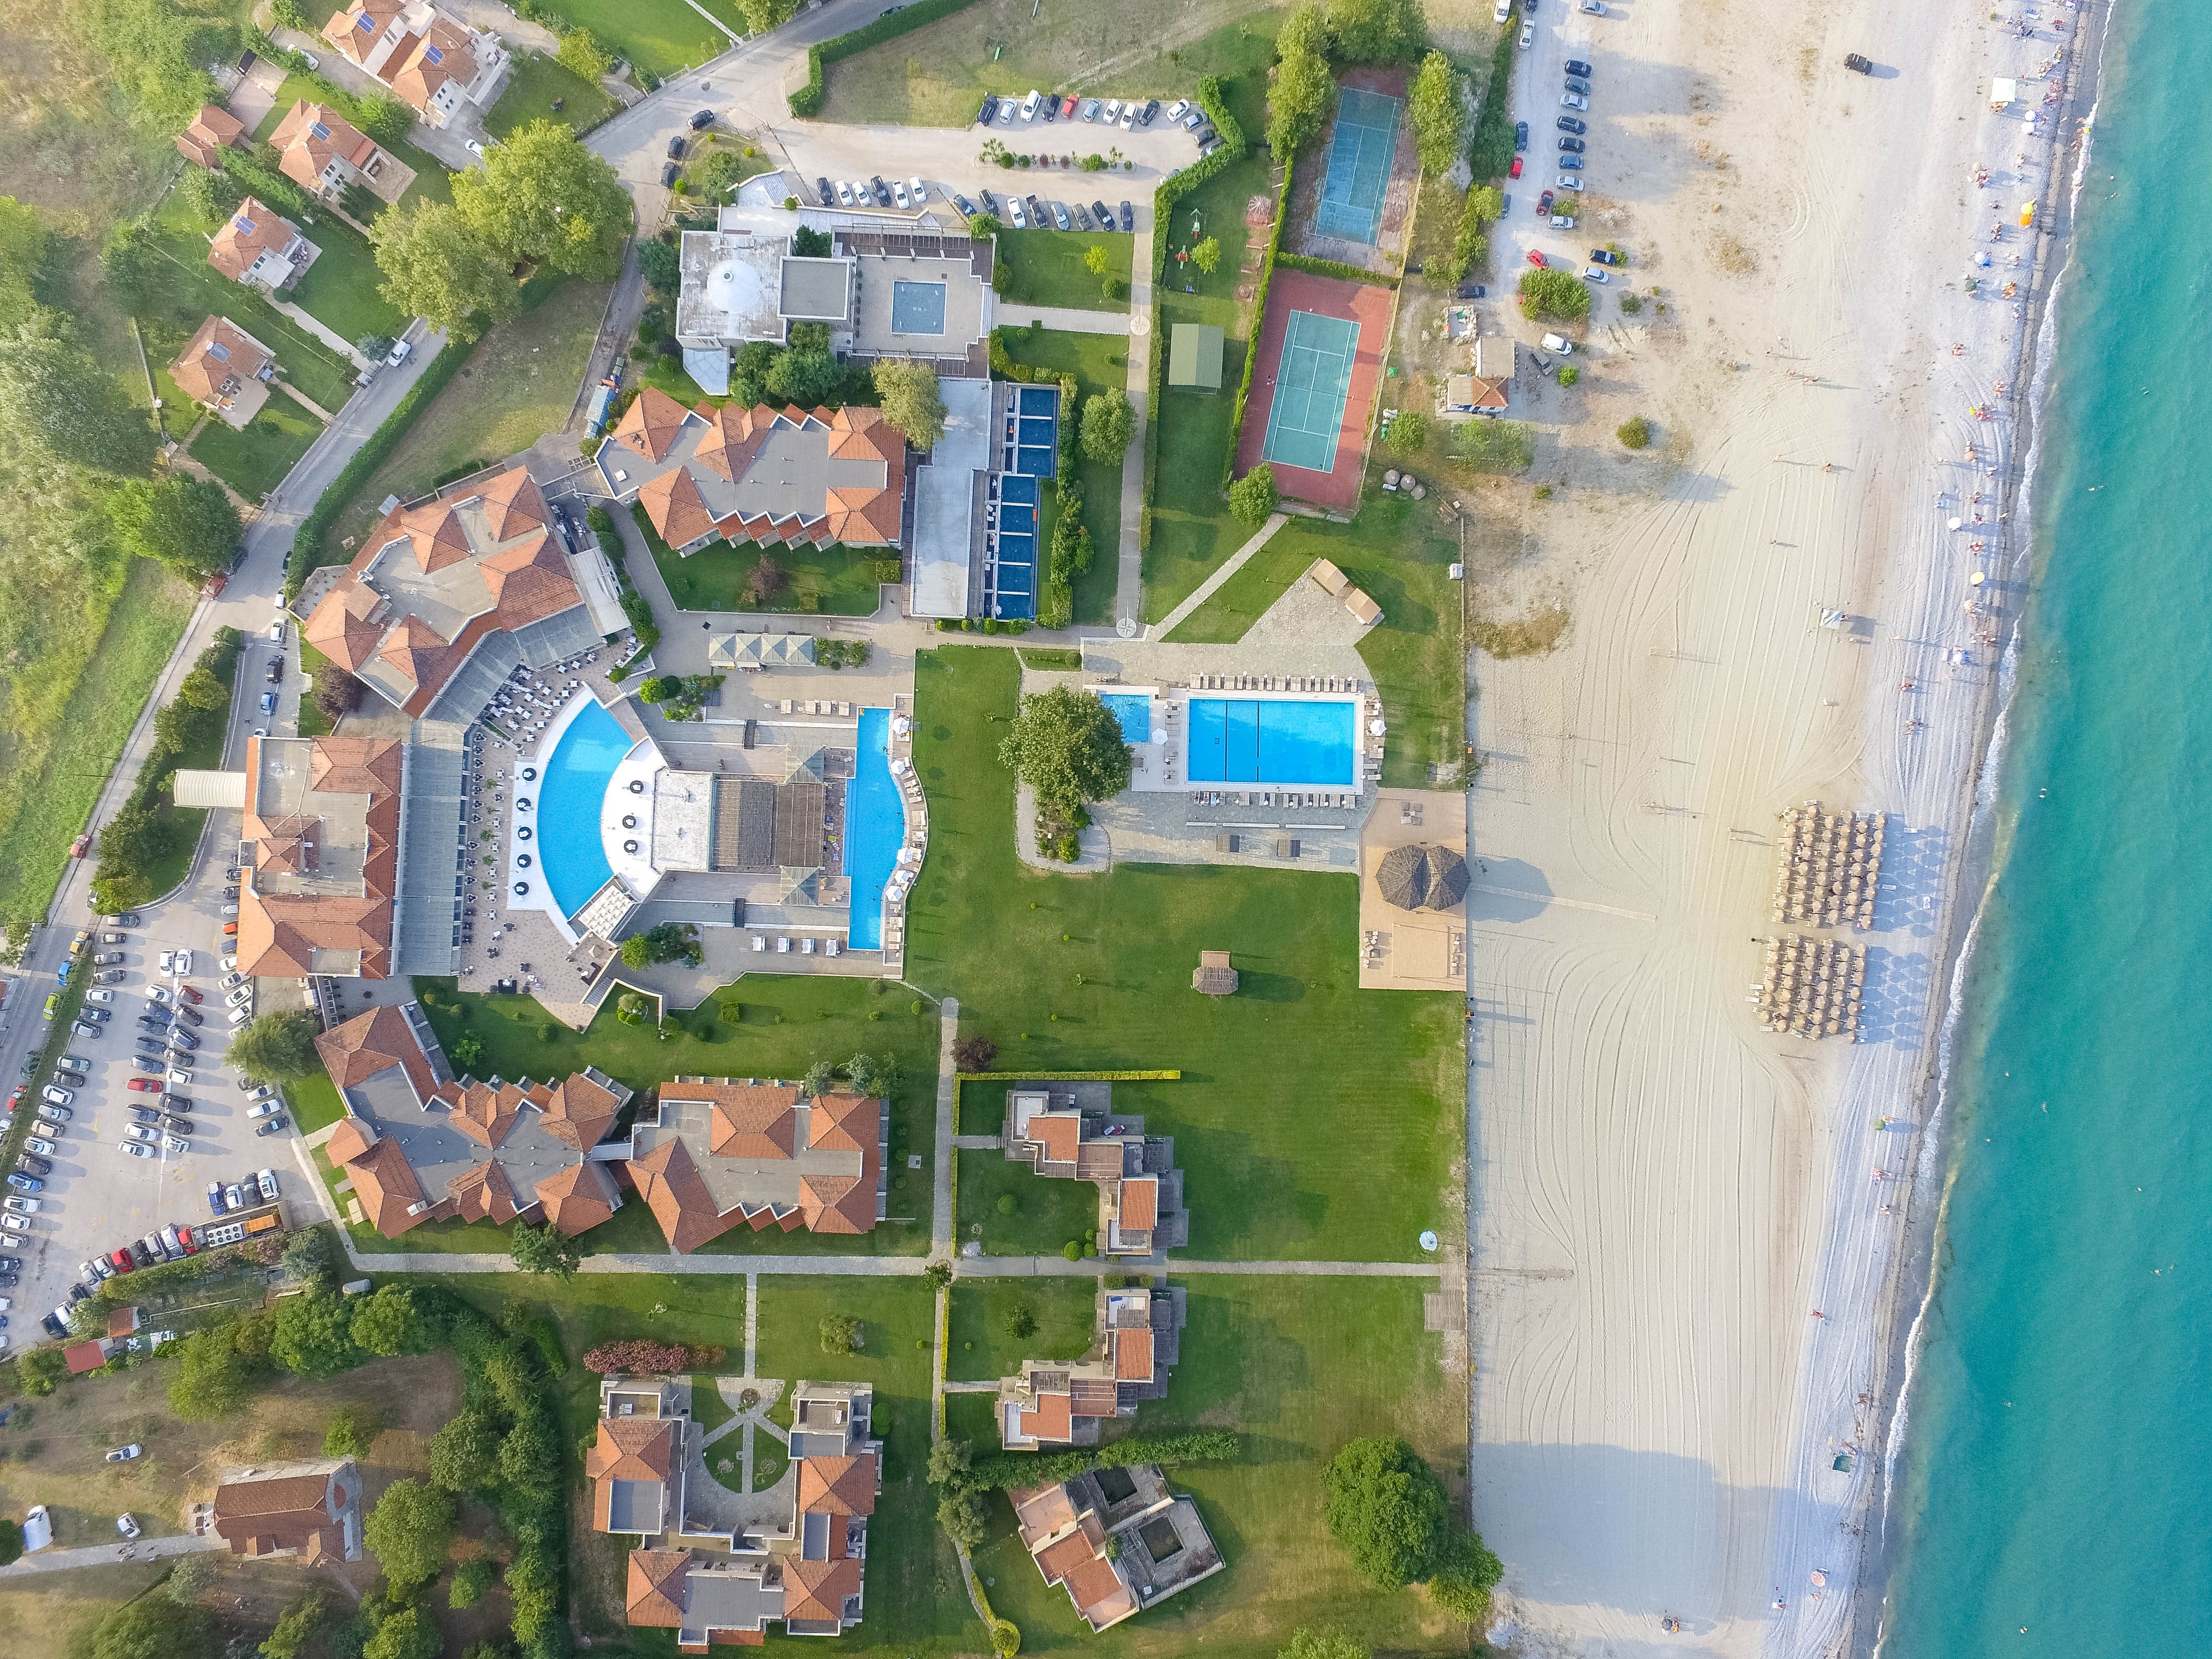 5* Dion Palace Luxury Resort &amp; Spa - Λιτόχωρο ✦ -50% ✦ 3 Ημέρες (2 Διανυκτερεύσεις) ✦ 2 άτομα + 1 παιδί έως 12 ετών ✦ 8 ✦ 16/04/2023 έως 30/04/2023 και 17/10/2023 έως 31/10/2023 ✦ Μπροστά σε παραλία!